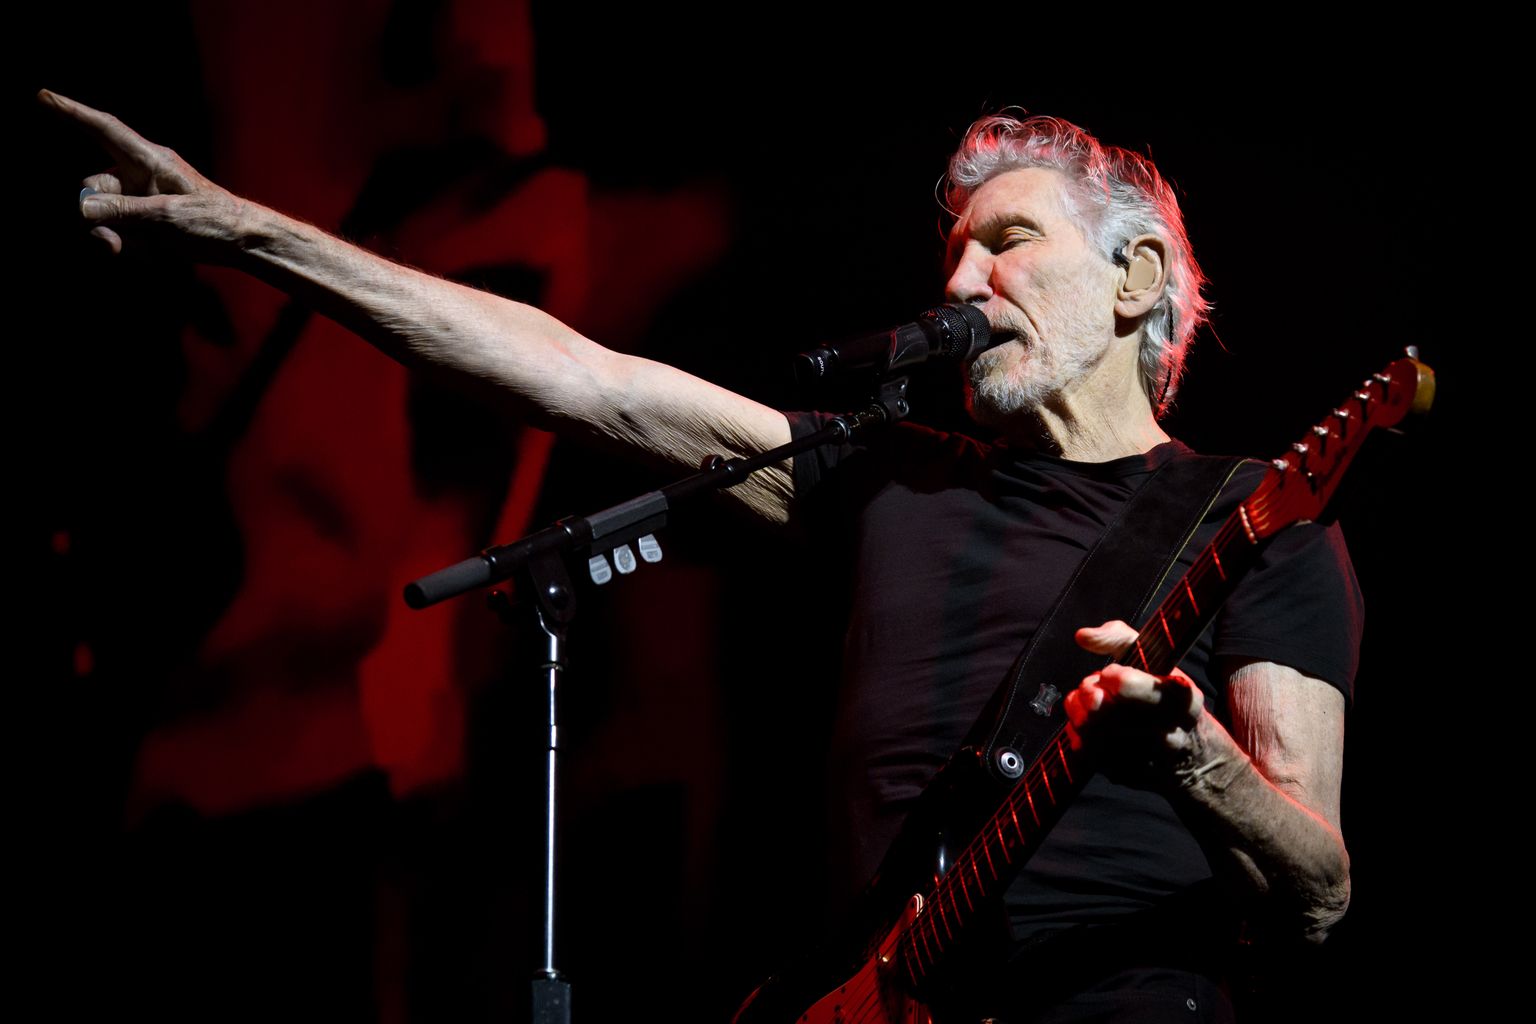 Inglise rokkar ja bändi Pink Floyd asutajaliige Roger Waters esinemas 8. juulil 2022 Kanadas Torontos